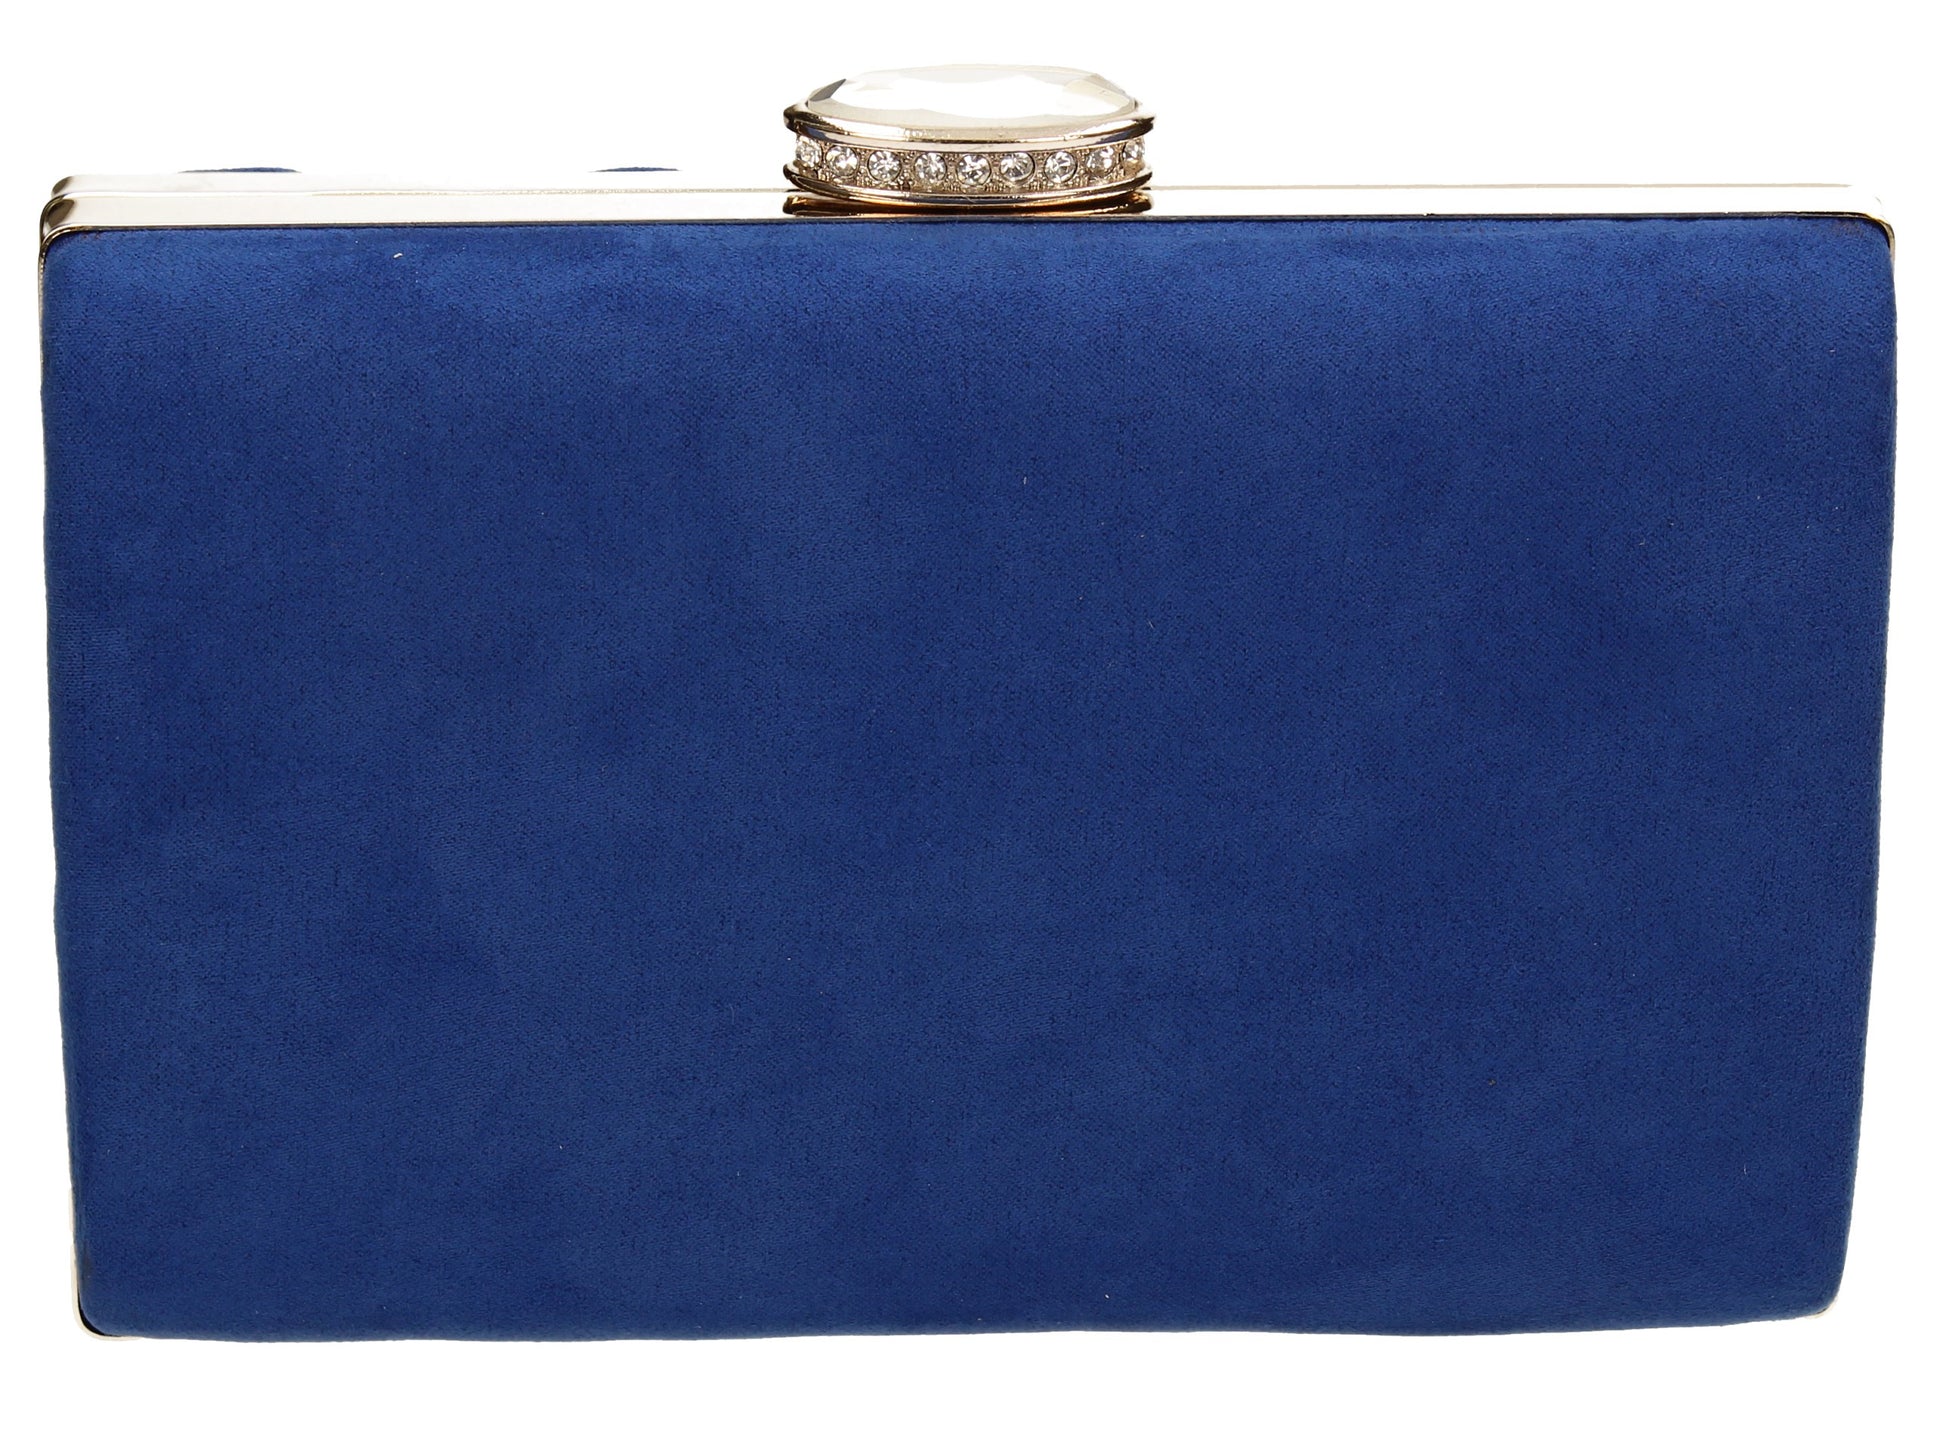 SWANKYSWANS Surrey Clutch Bag Royal Blue Cute Cheap Clutch Bag For Weddings School and Work